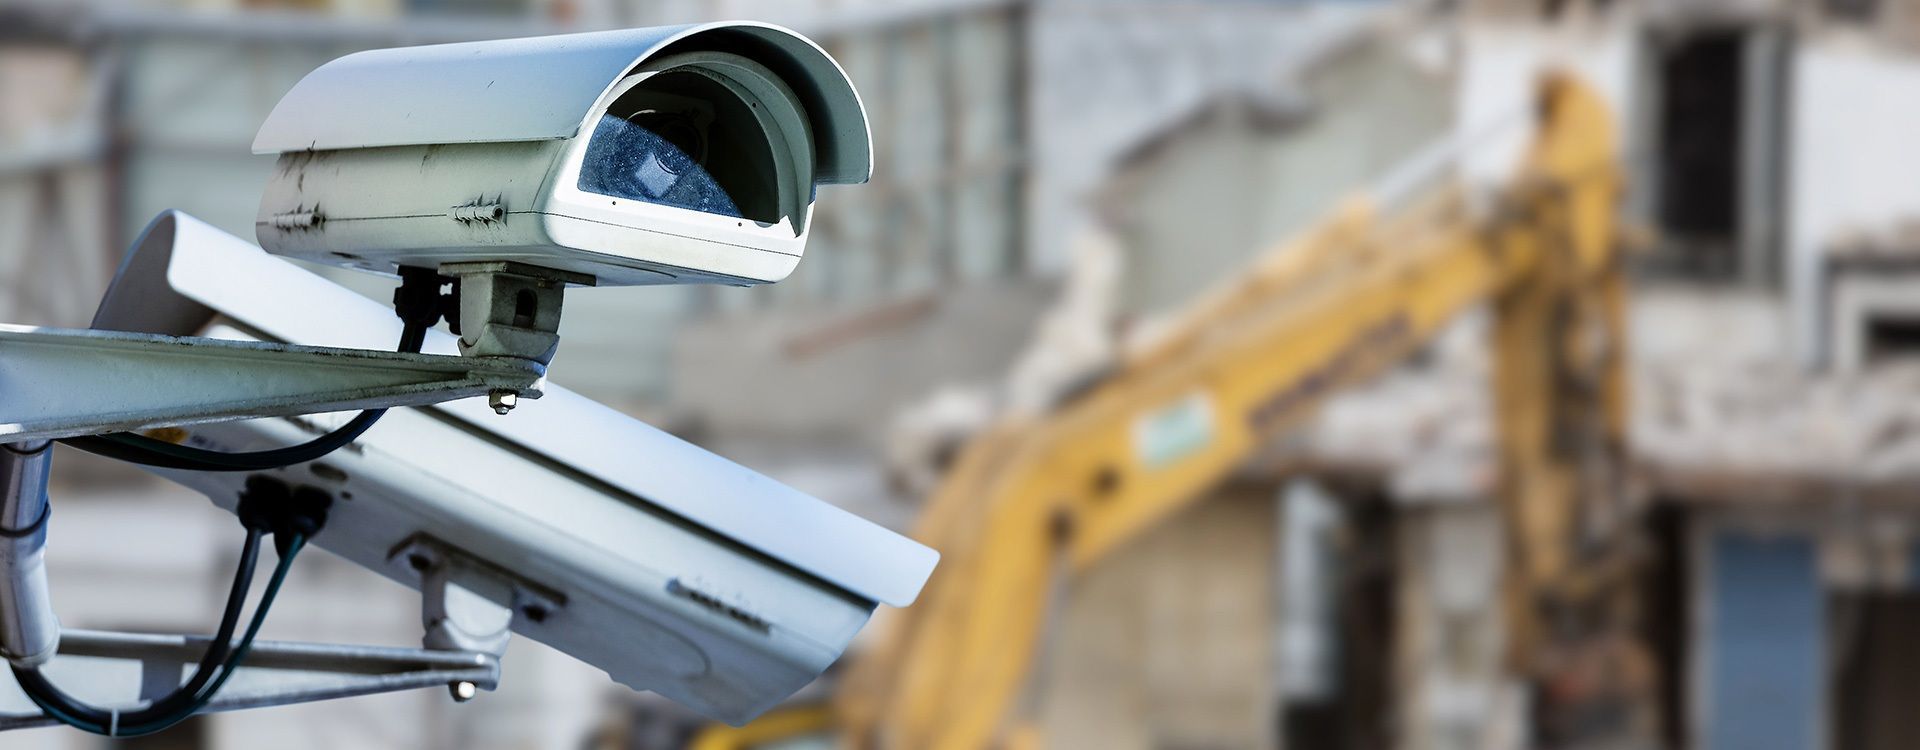 Building site surveillance